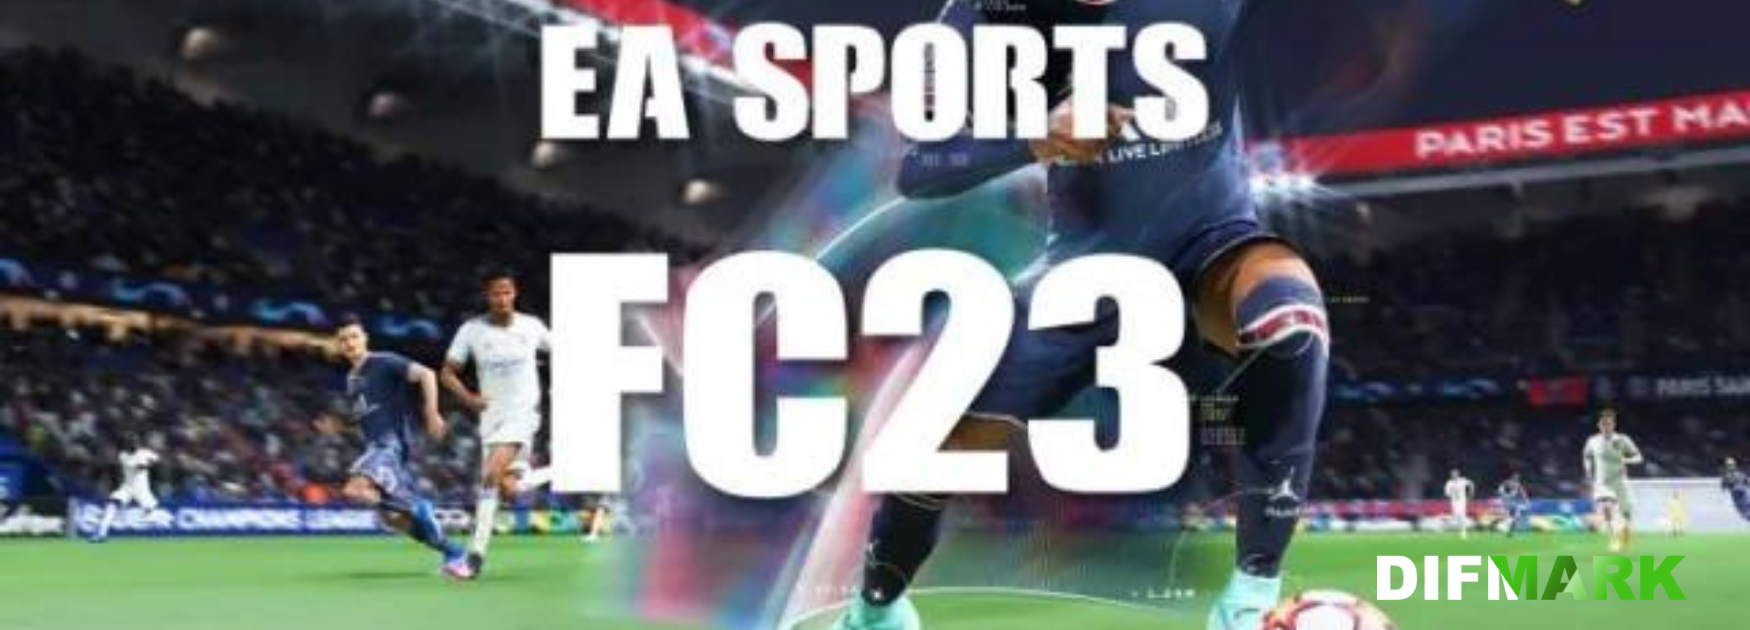 EA heeft besloten om FIFA te hernoemen naar EA Sports Football Club